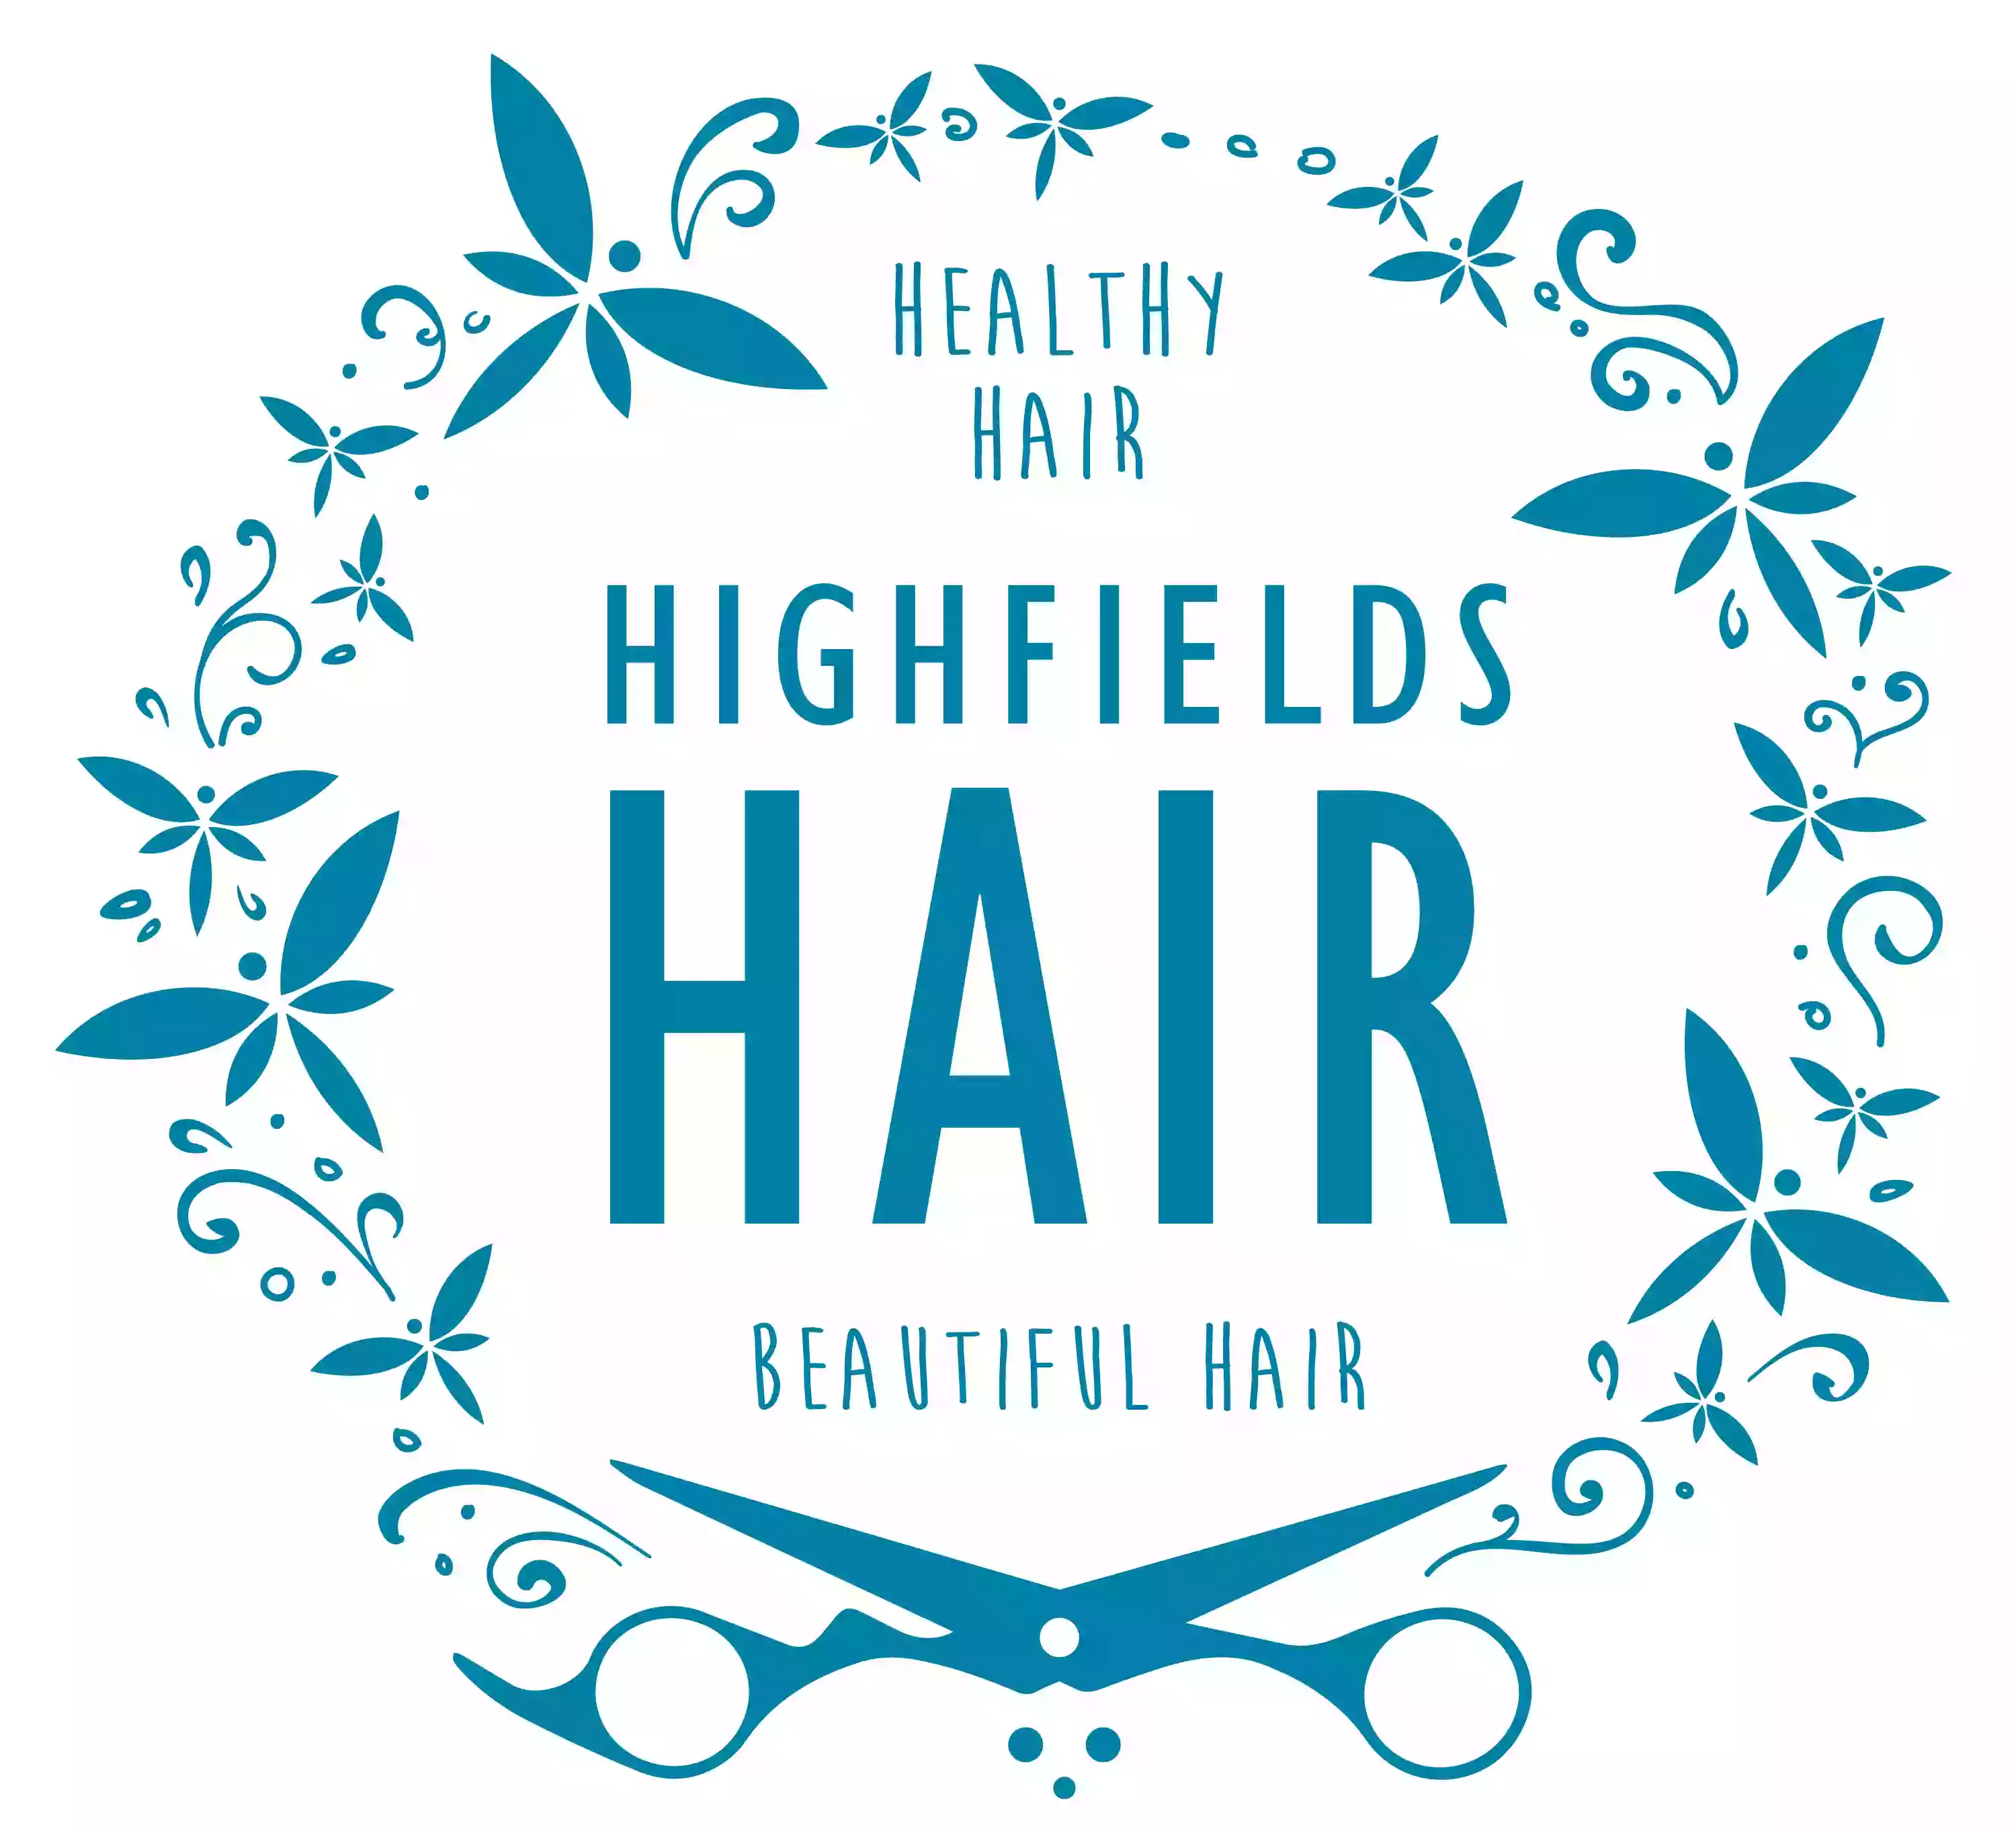 Highfields Hair